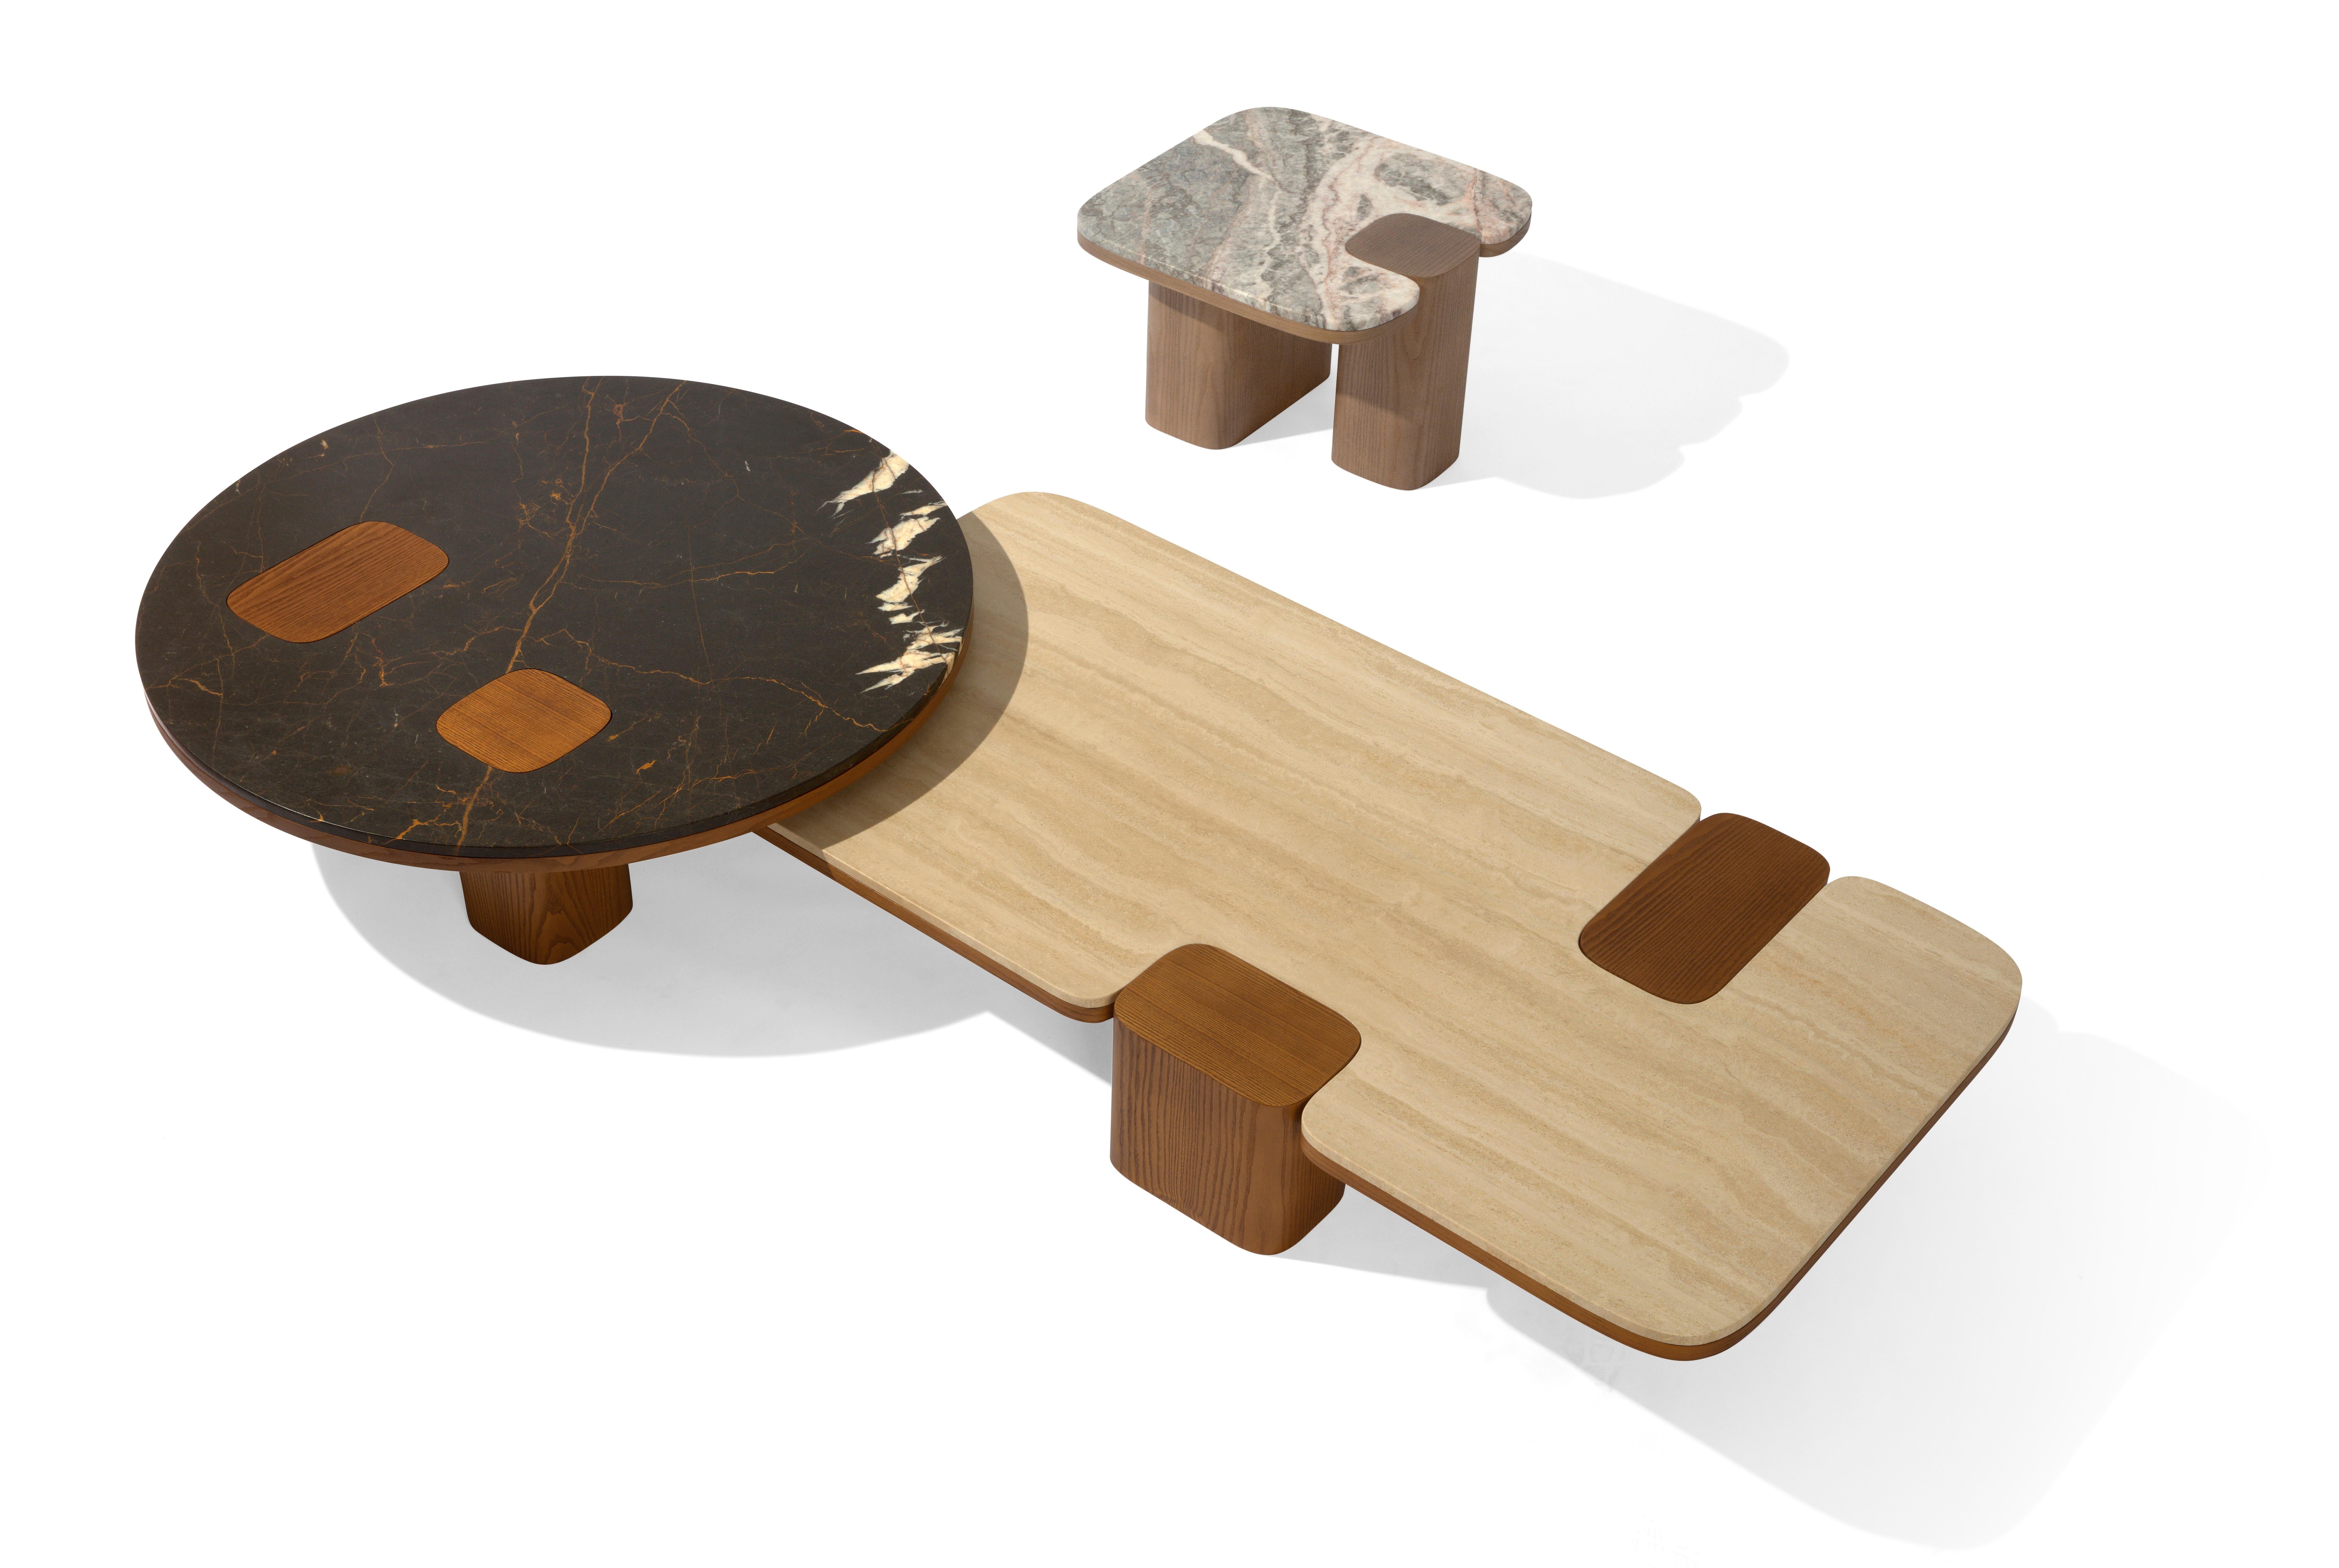 Cette exceptionnelle table basse ronde donnera une touche plus contemporaine et moderne à votre salon. La structure est entièrement en bois de frêne massif et le plateau en marbre s'intègre parfaitement dans un environnement de luxe, donnant un